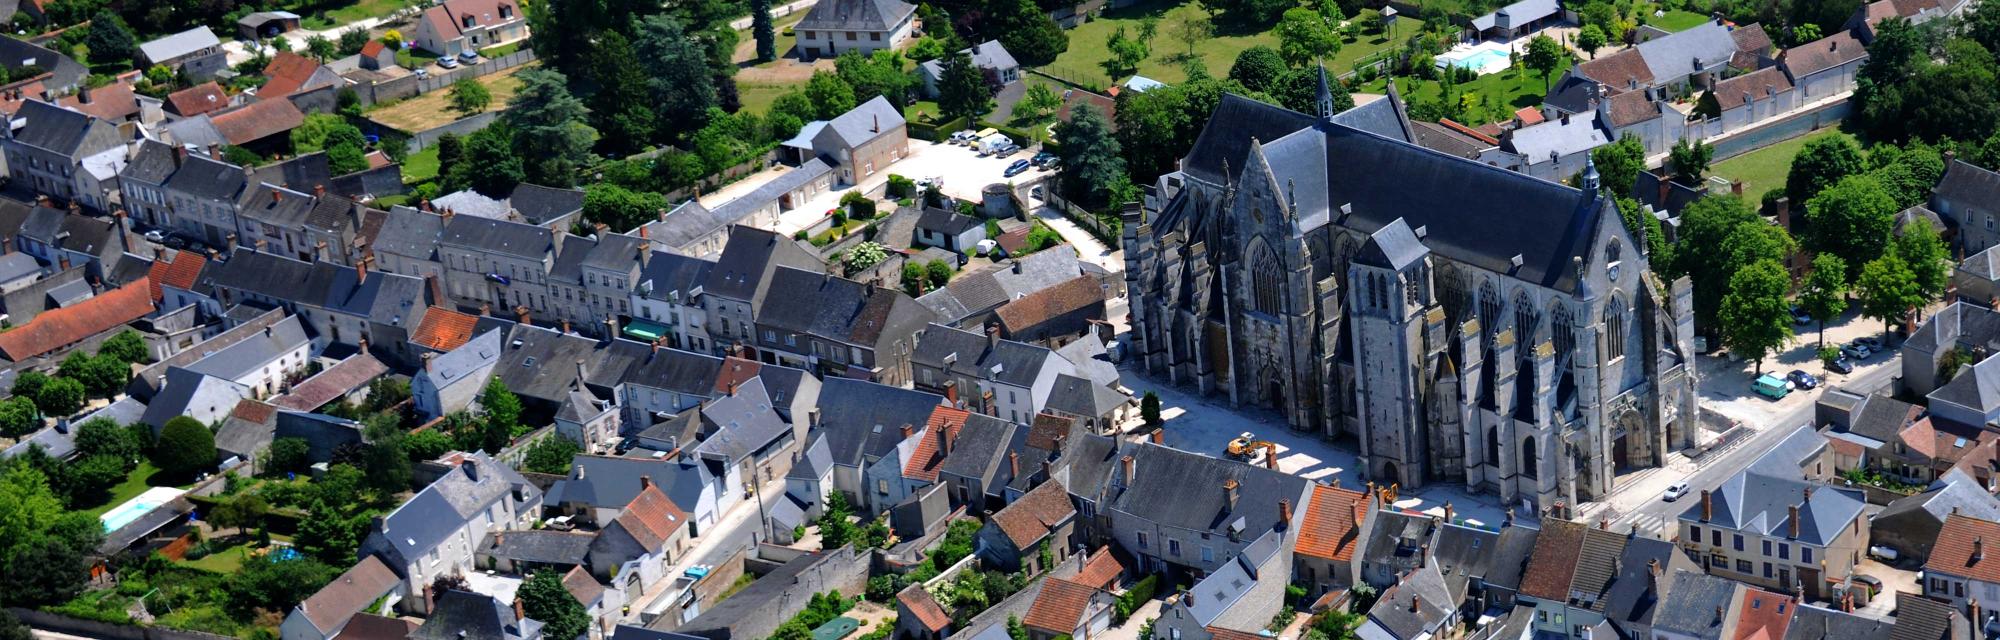 Vua aérienne de la basilique de Cléry-Saint-André